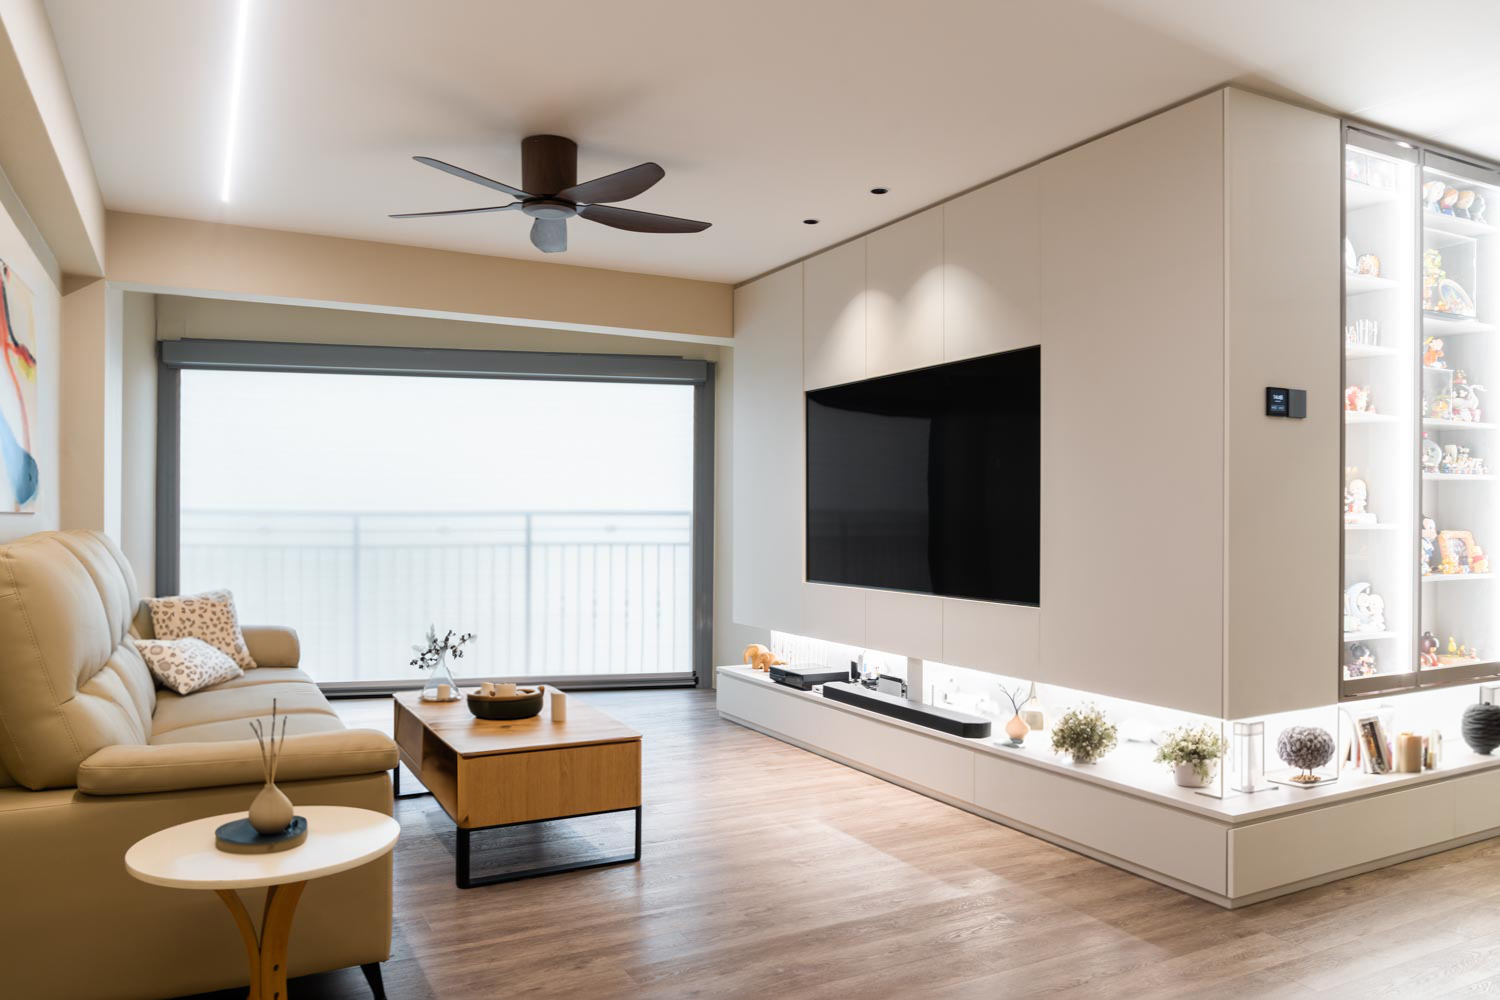 Modern Design - Living Room - HDB 3 Room - Design by Design 4 Space Pte Ltd